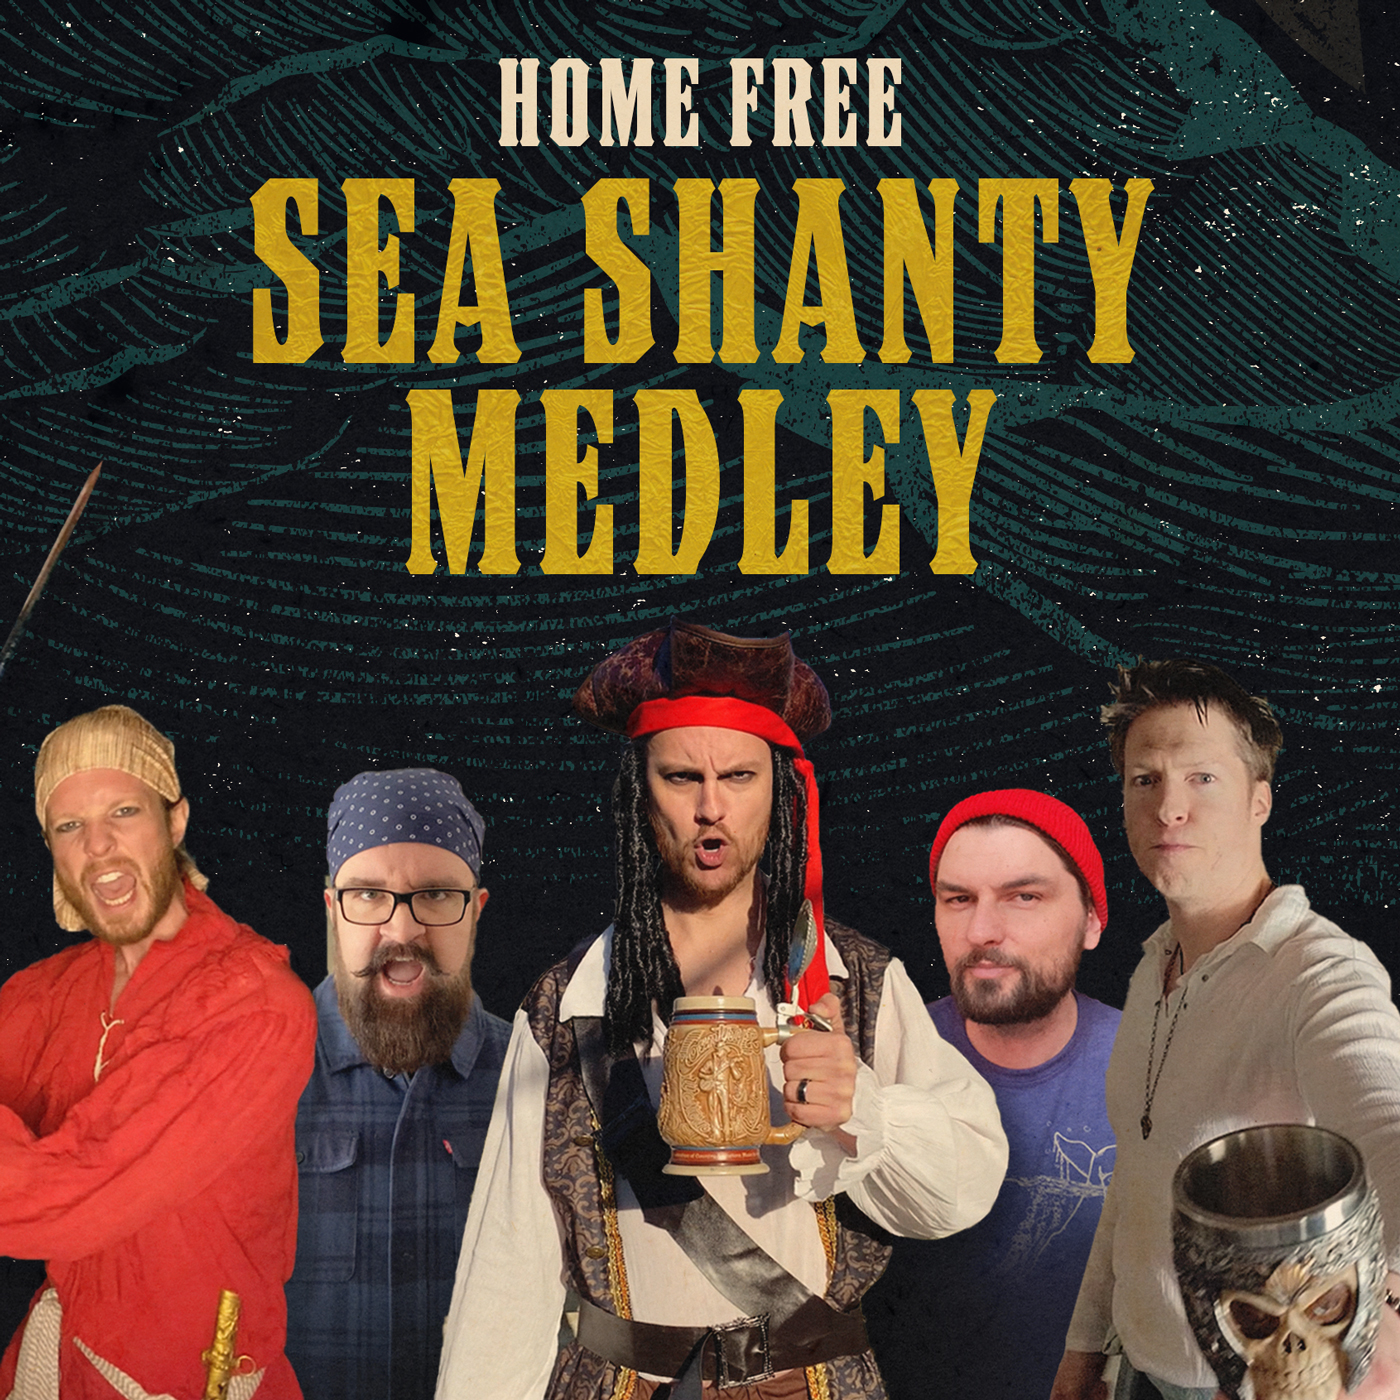 Home free sea shanty medley